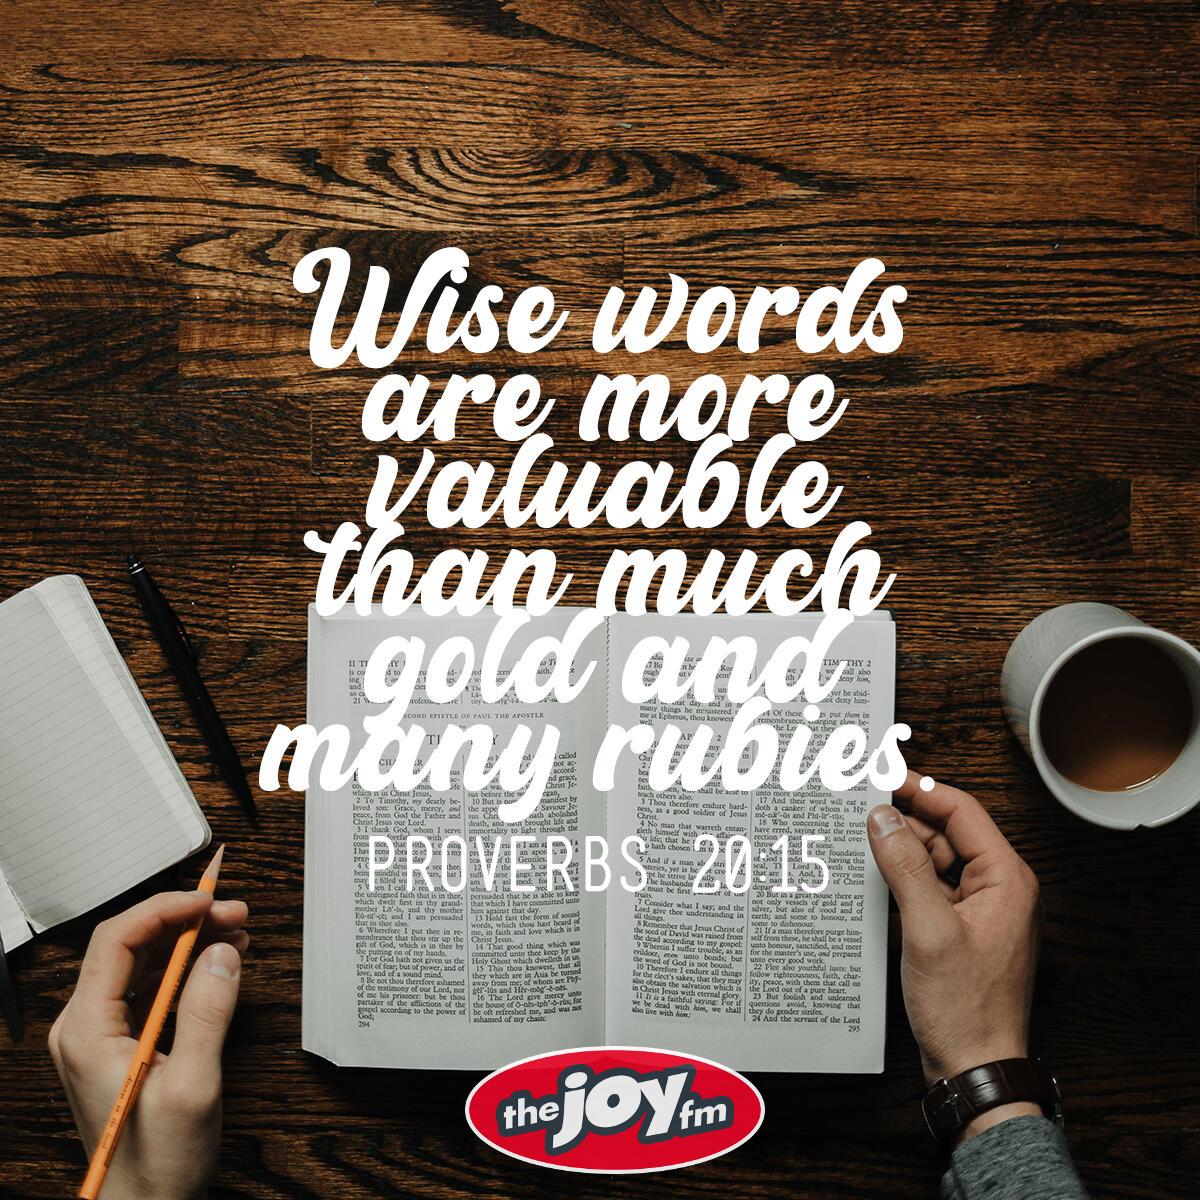 Proverbs 20:15